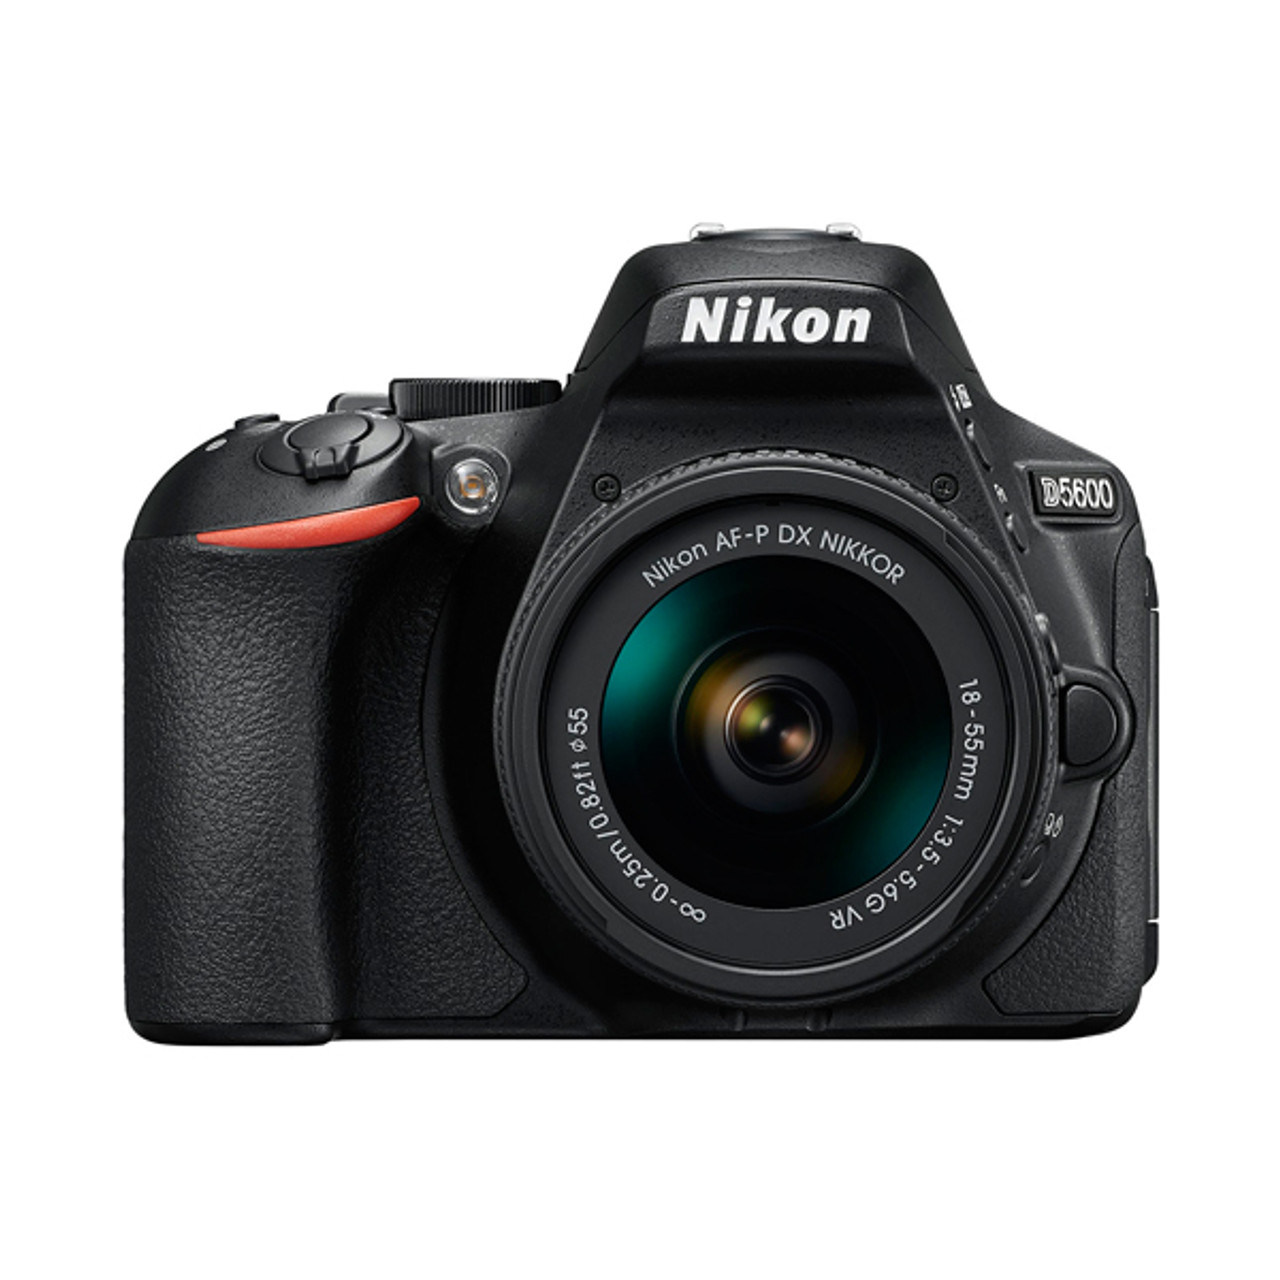 Nikon D5600 AF-P 18-55mm F3.5-5.6G VR Kit